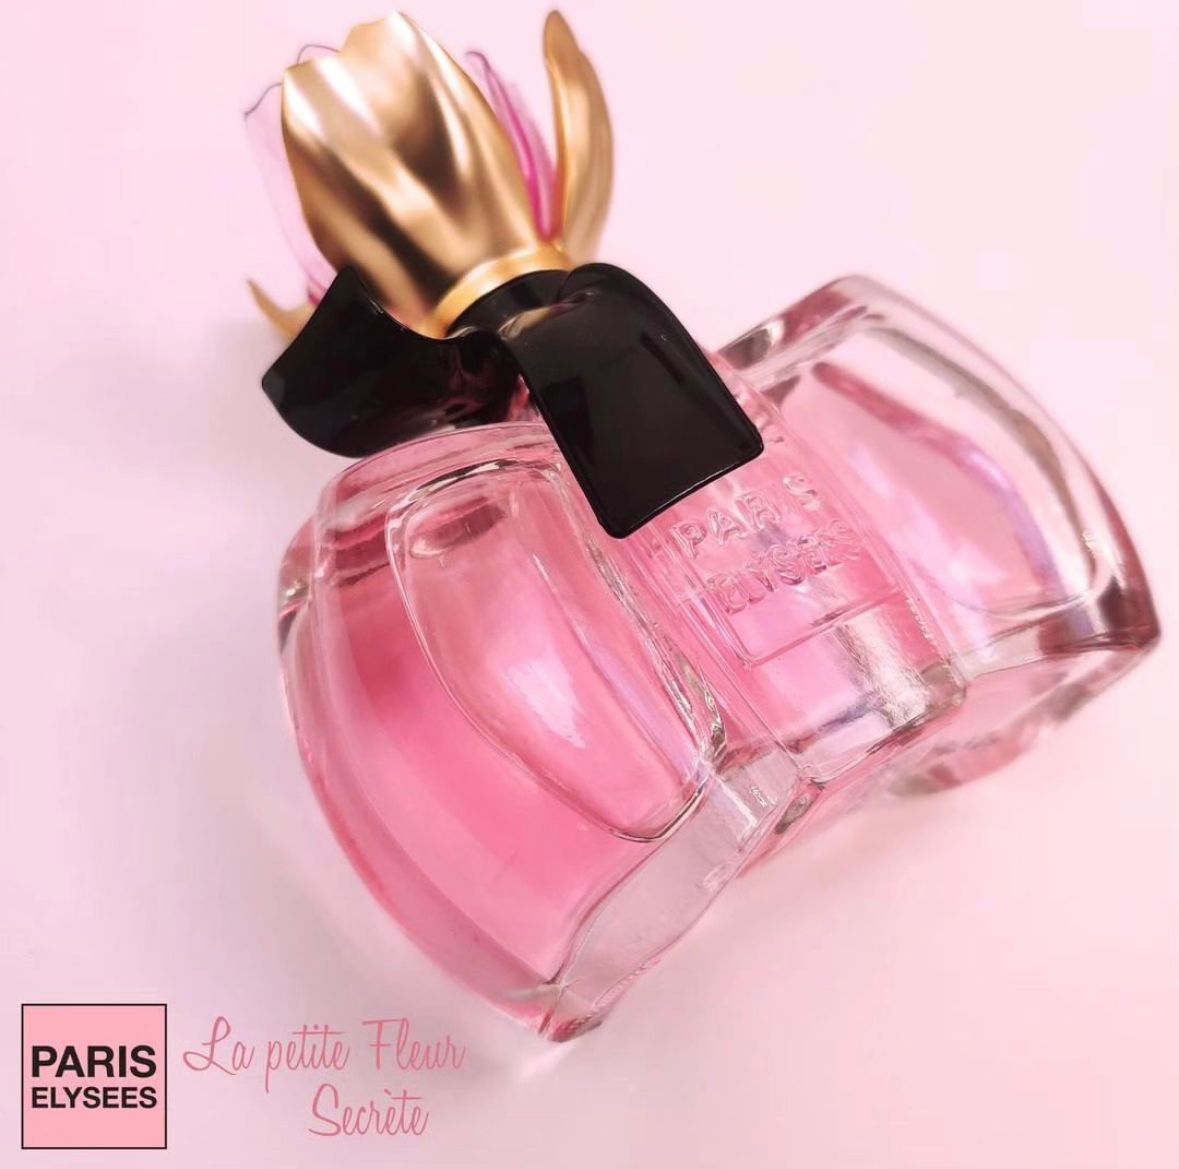 La Petite Fleur d'amour Paris Elysees Perfume Feminino - Eau de